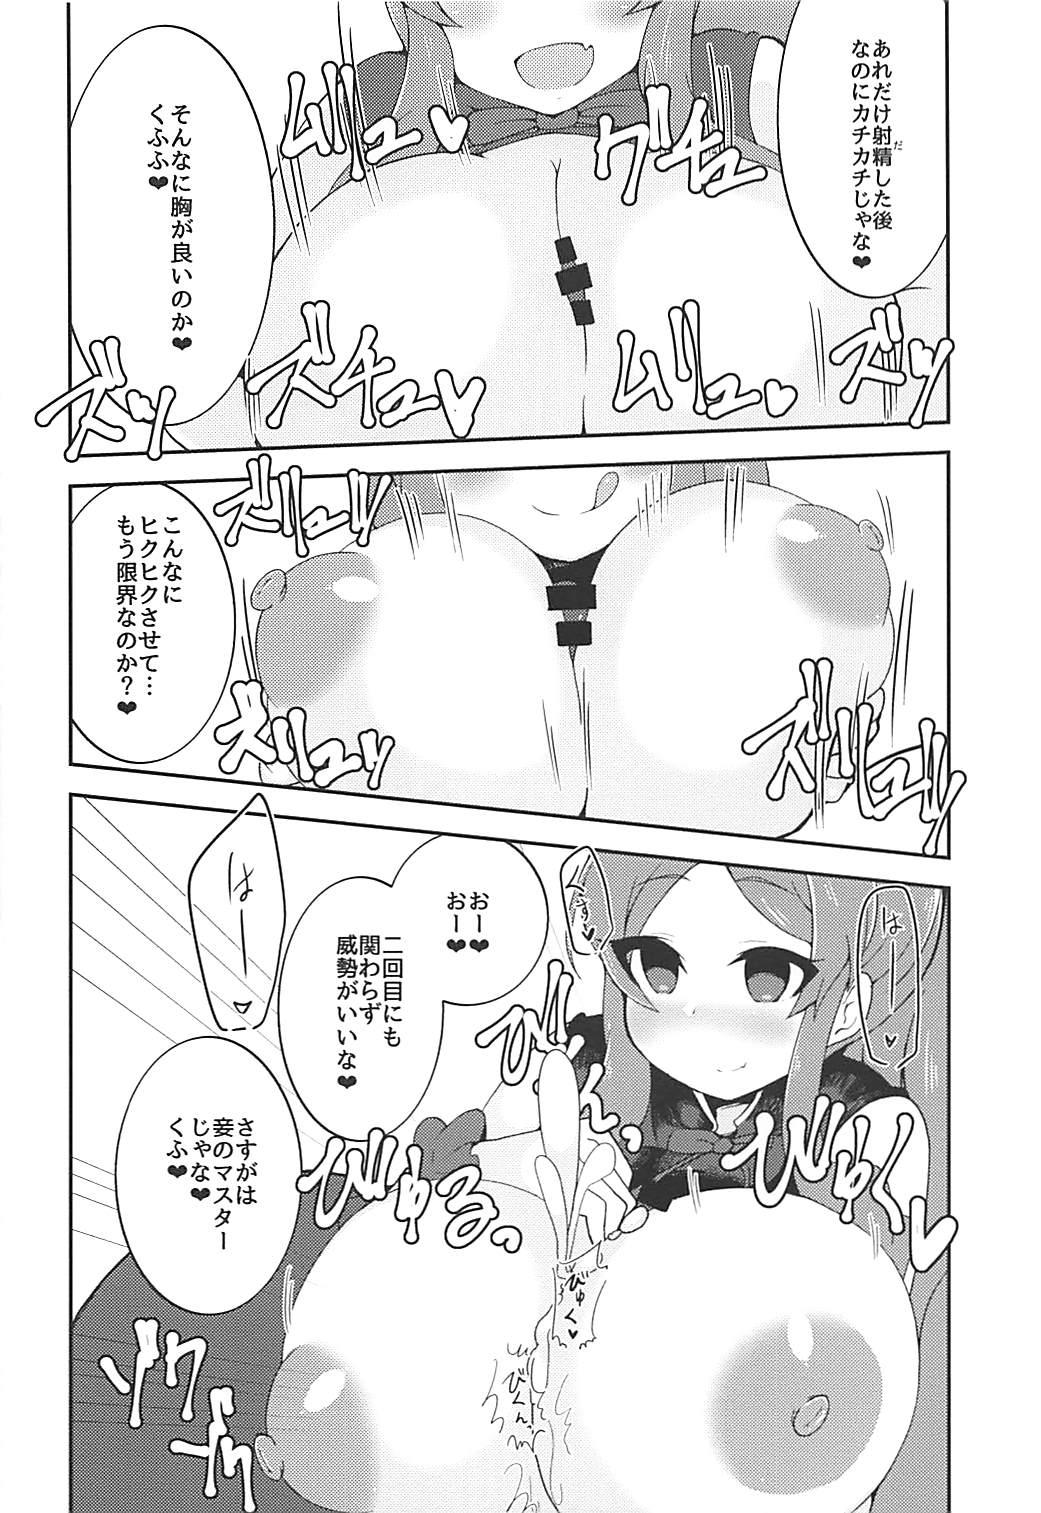 Pussy Ookii no ga Osuki? - Fate grand order Mas - Page 7